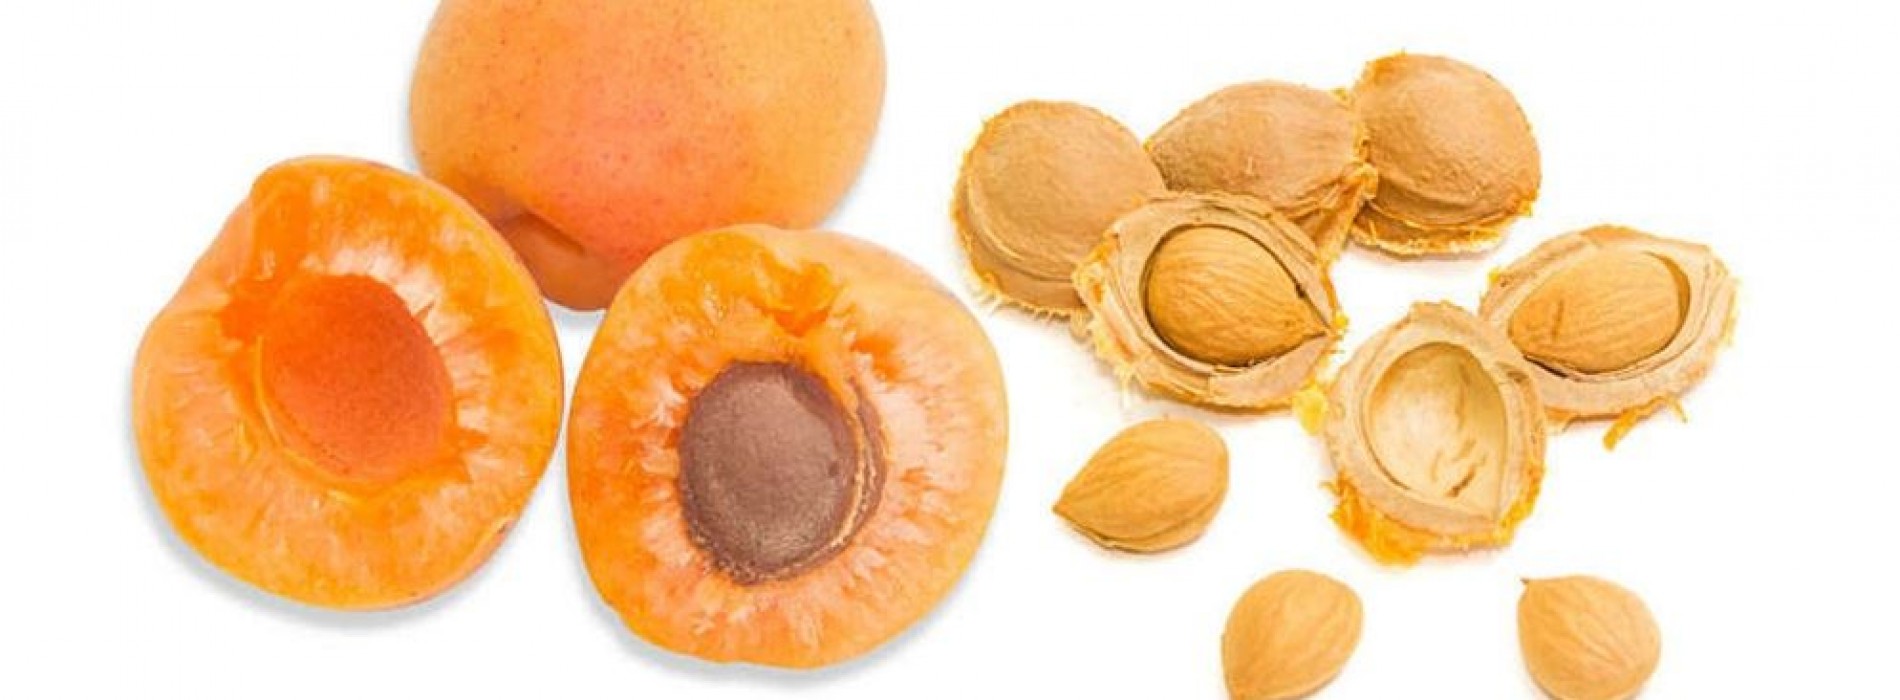 Voorzichtig met rauwe abrikozenpitten en amandelen